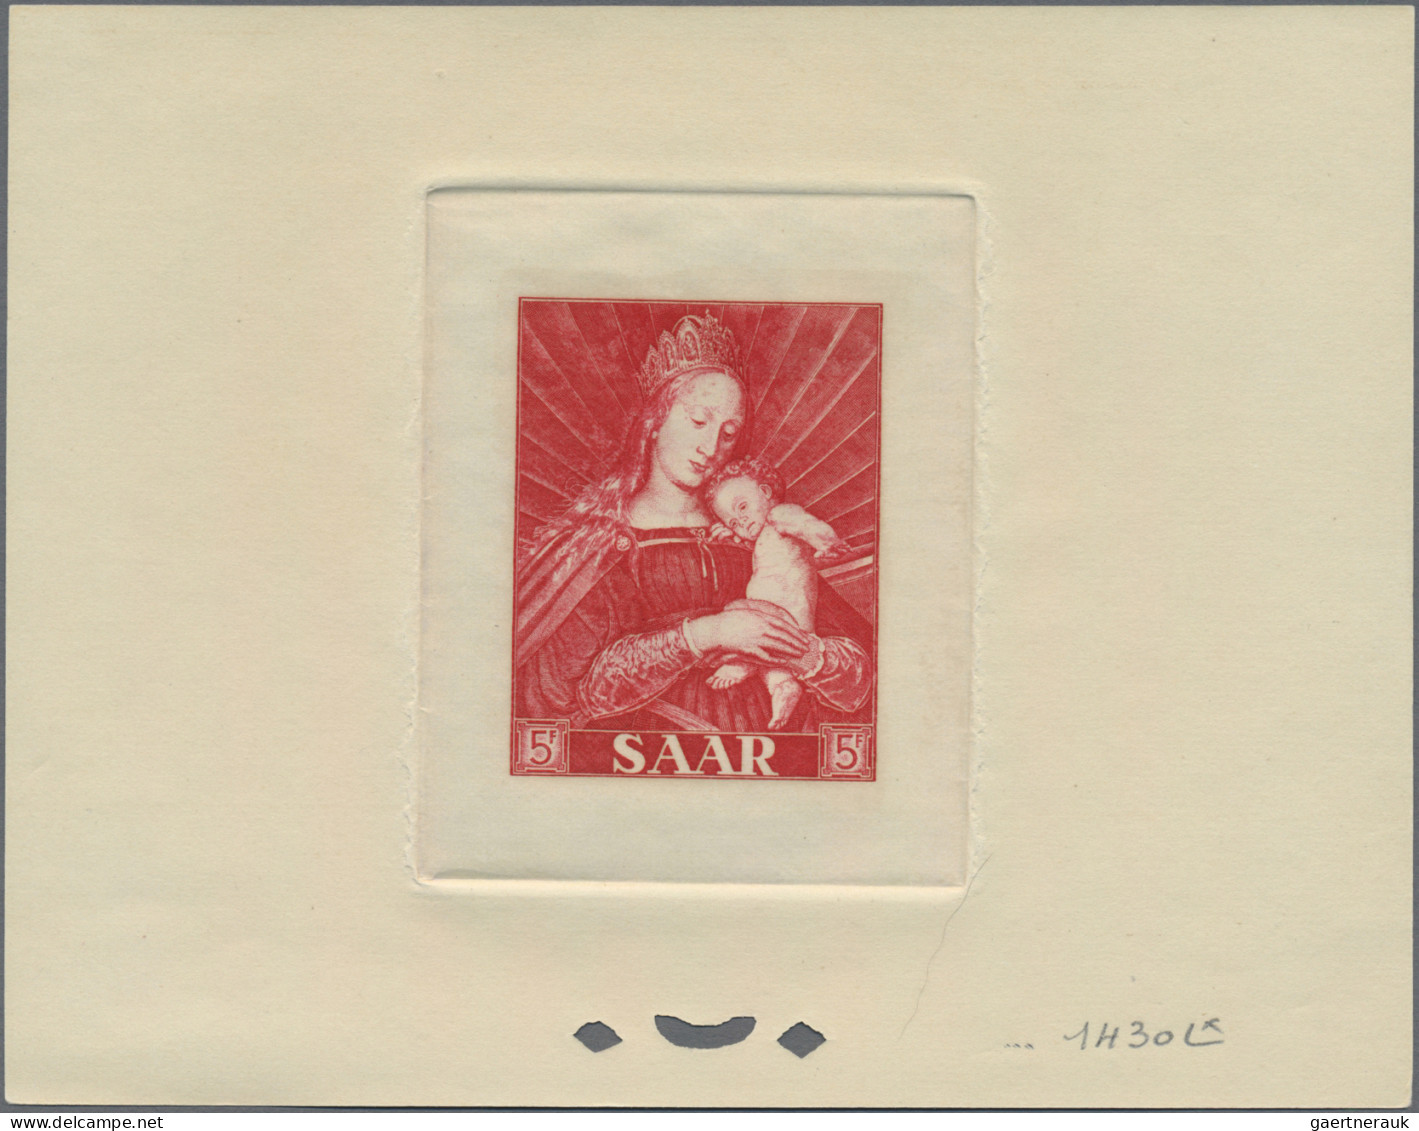 Saarland (1947/56): 1954/1955 'Dürer': Die zwei Ausgaben mit je drei Marken mit